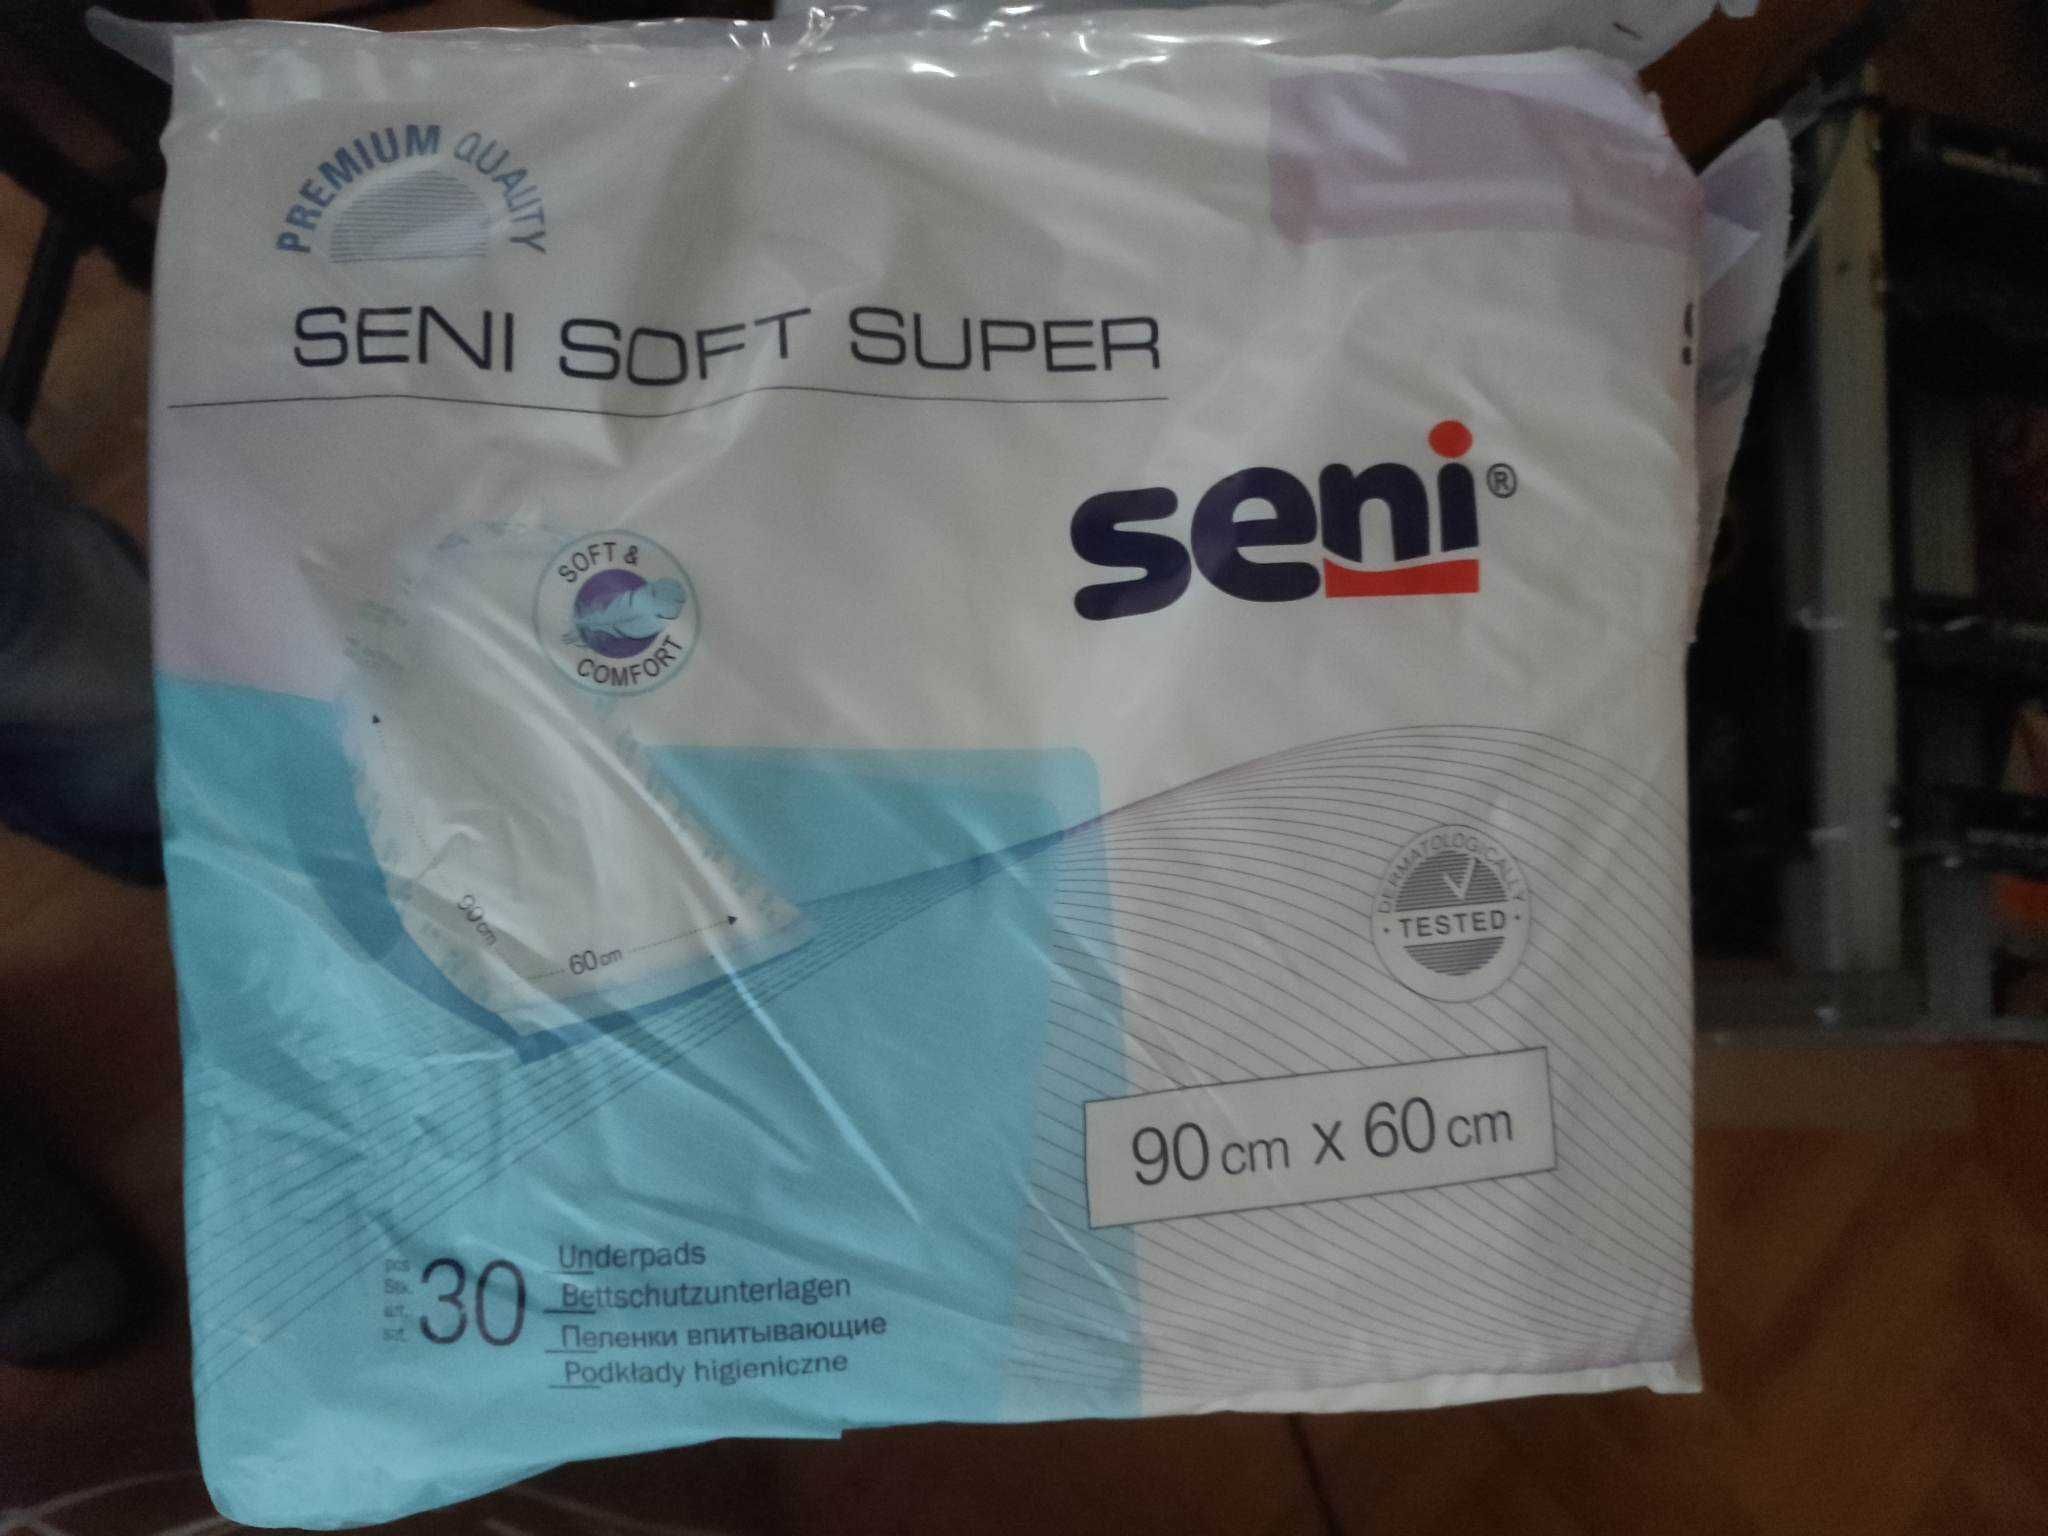 Podkłady higieniczne nieprzemakalne SUPER SENI SOFT